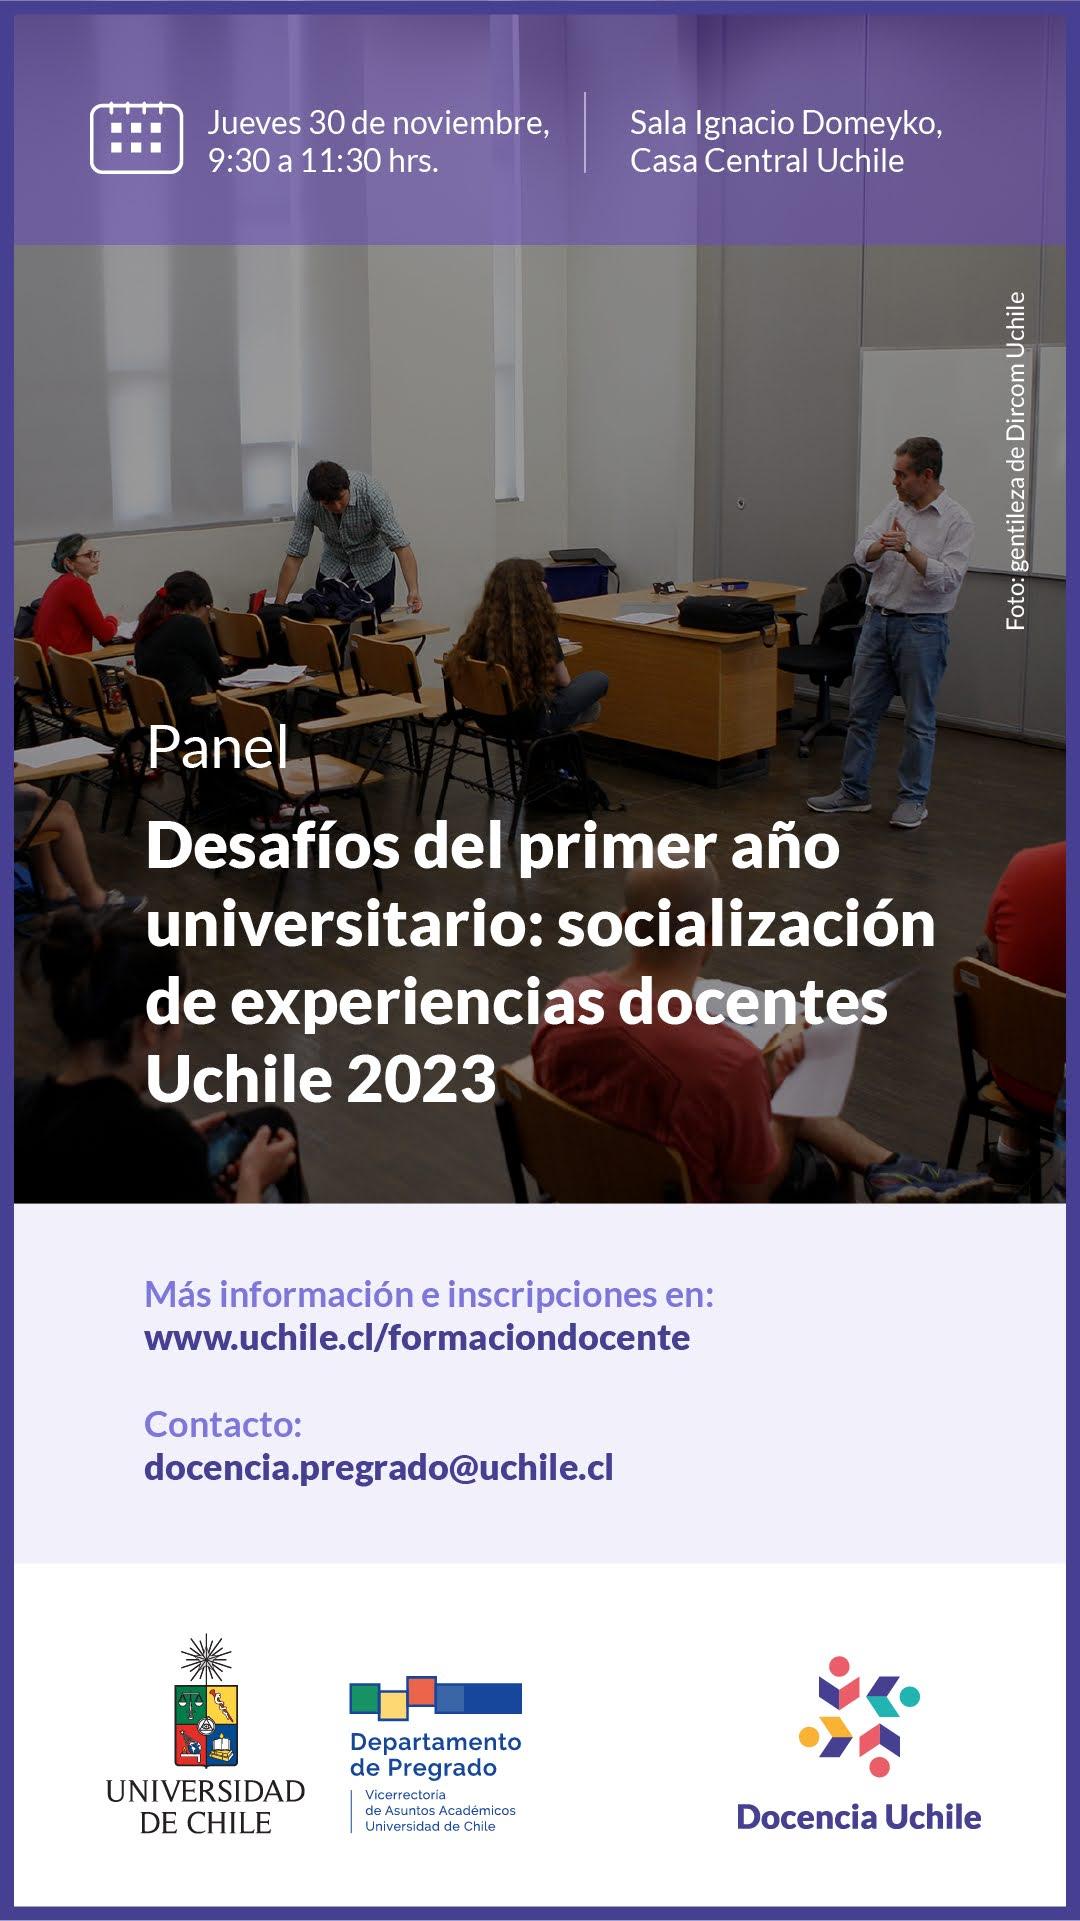 Panel “Desafíos del primer año universitario: socialización de experiencias docentes Uchile 2023”